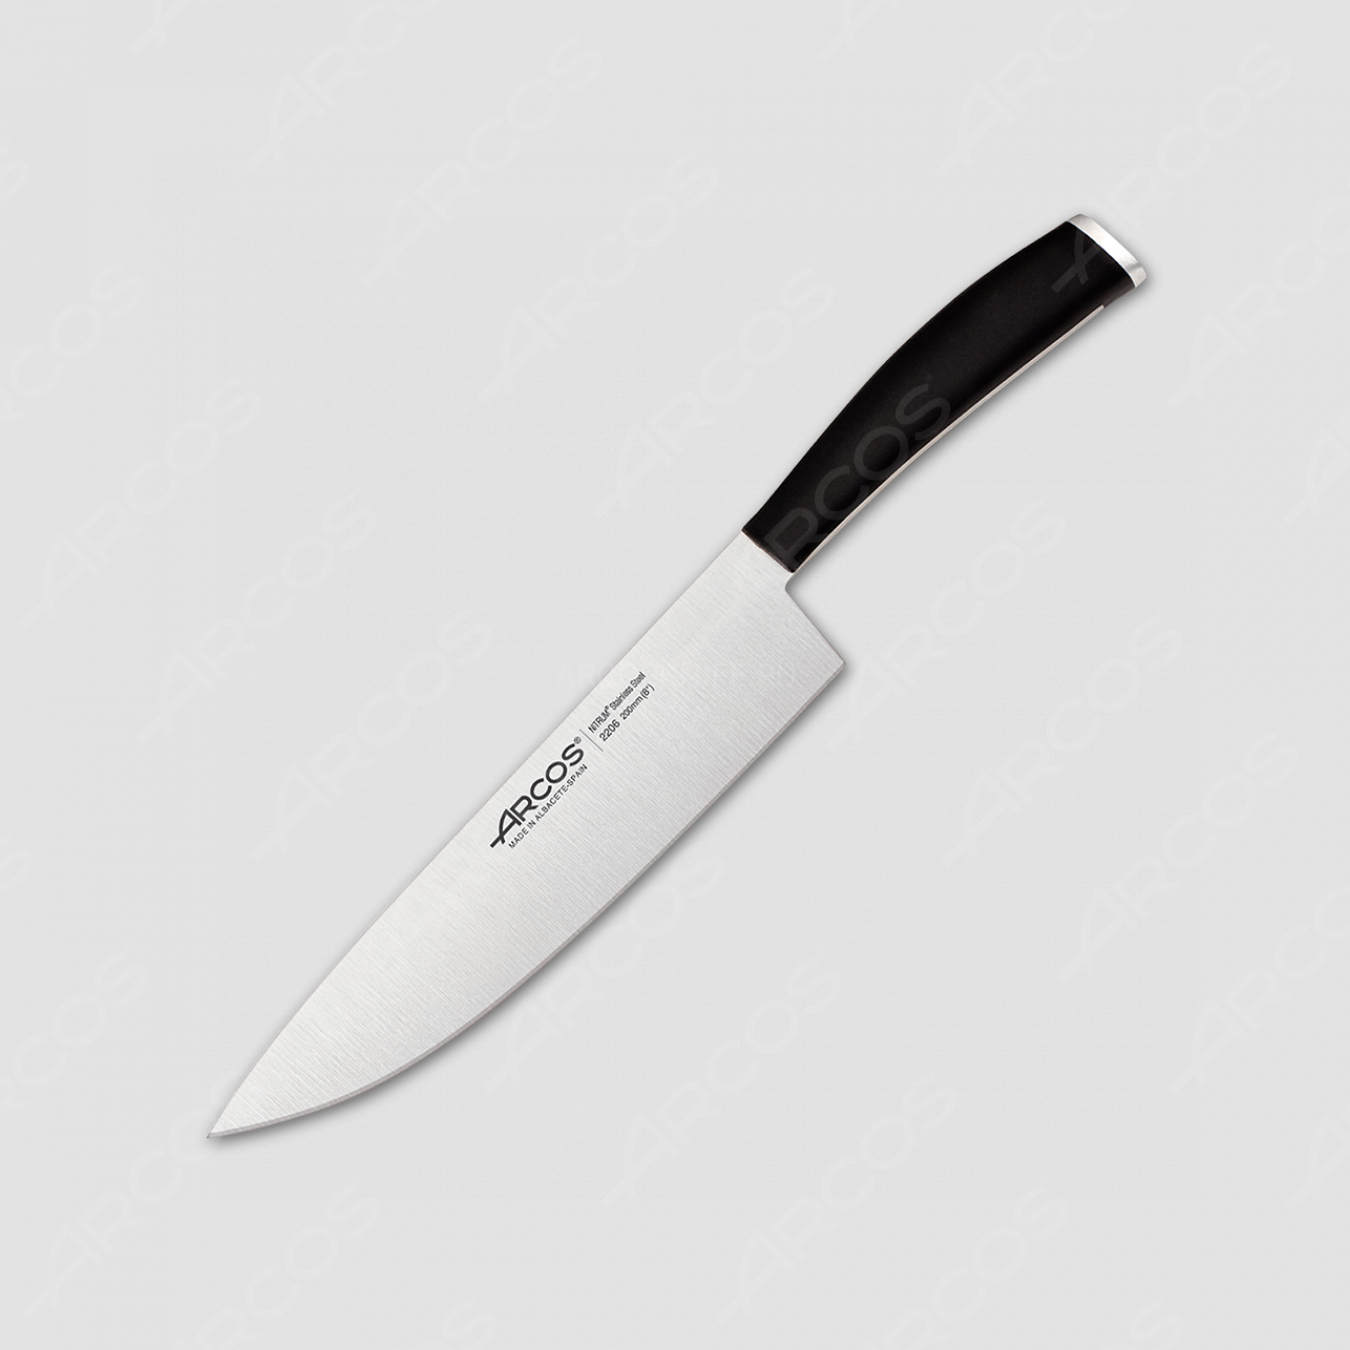 Профессиональный поварской кухонный нож 20 см, серия Tango, ARCOS, Испания